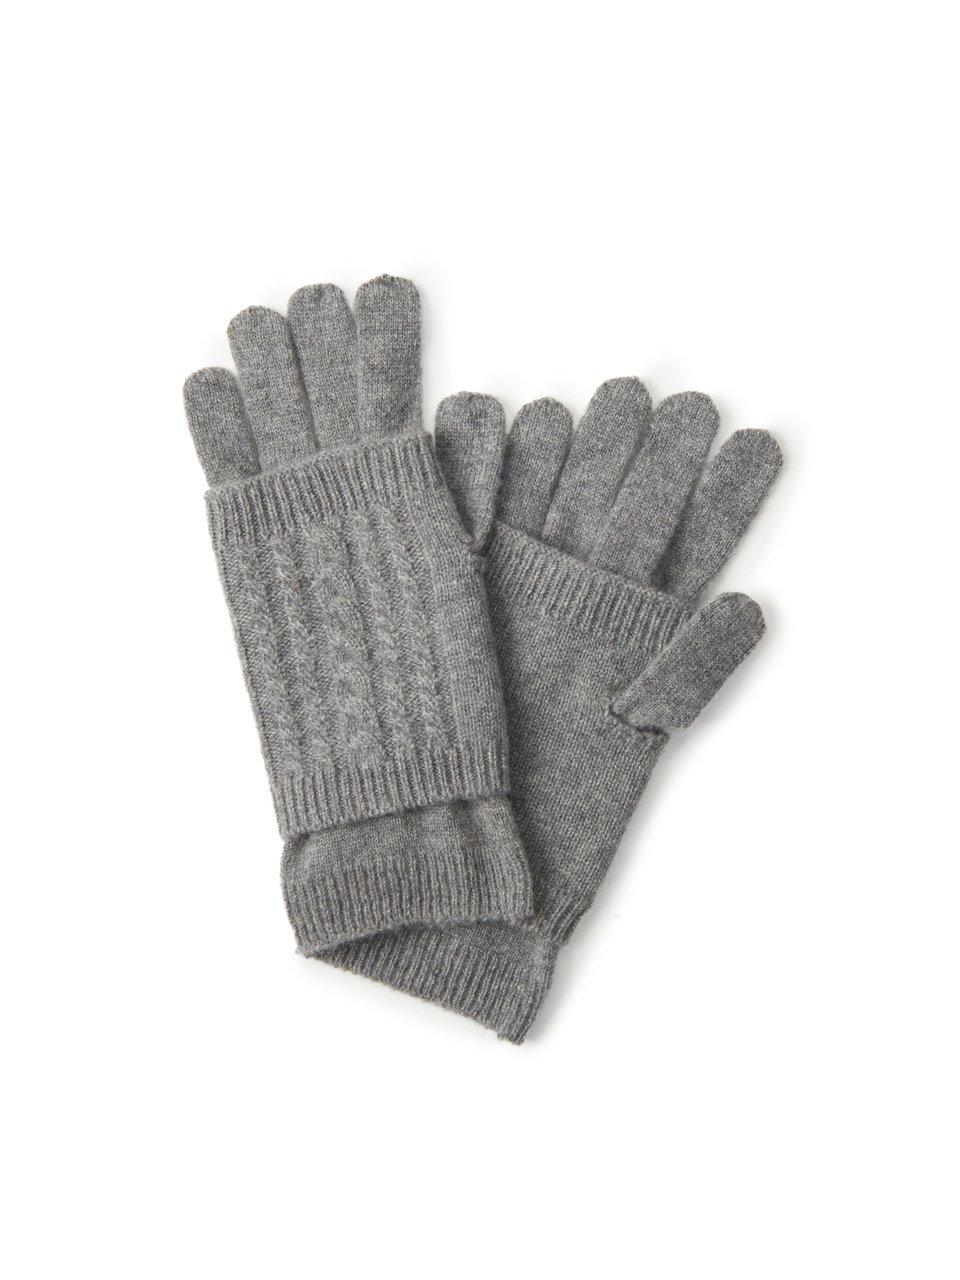 Peter Hahn Cashmere - Les gants et mitaines 100% cachemire